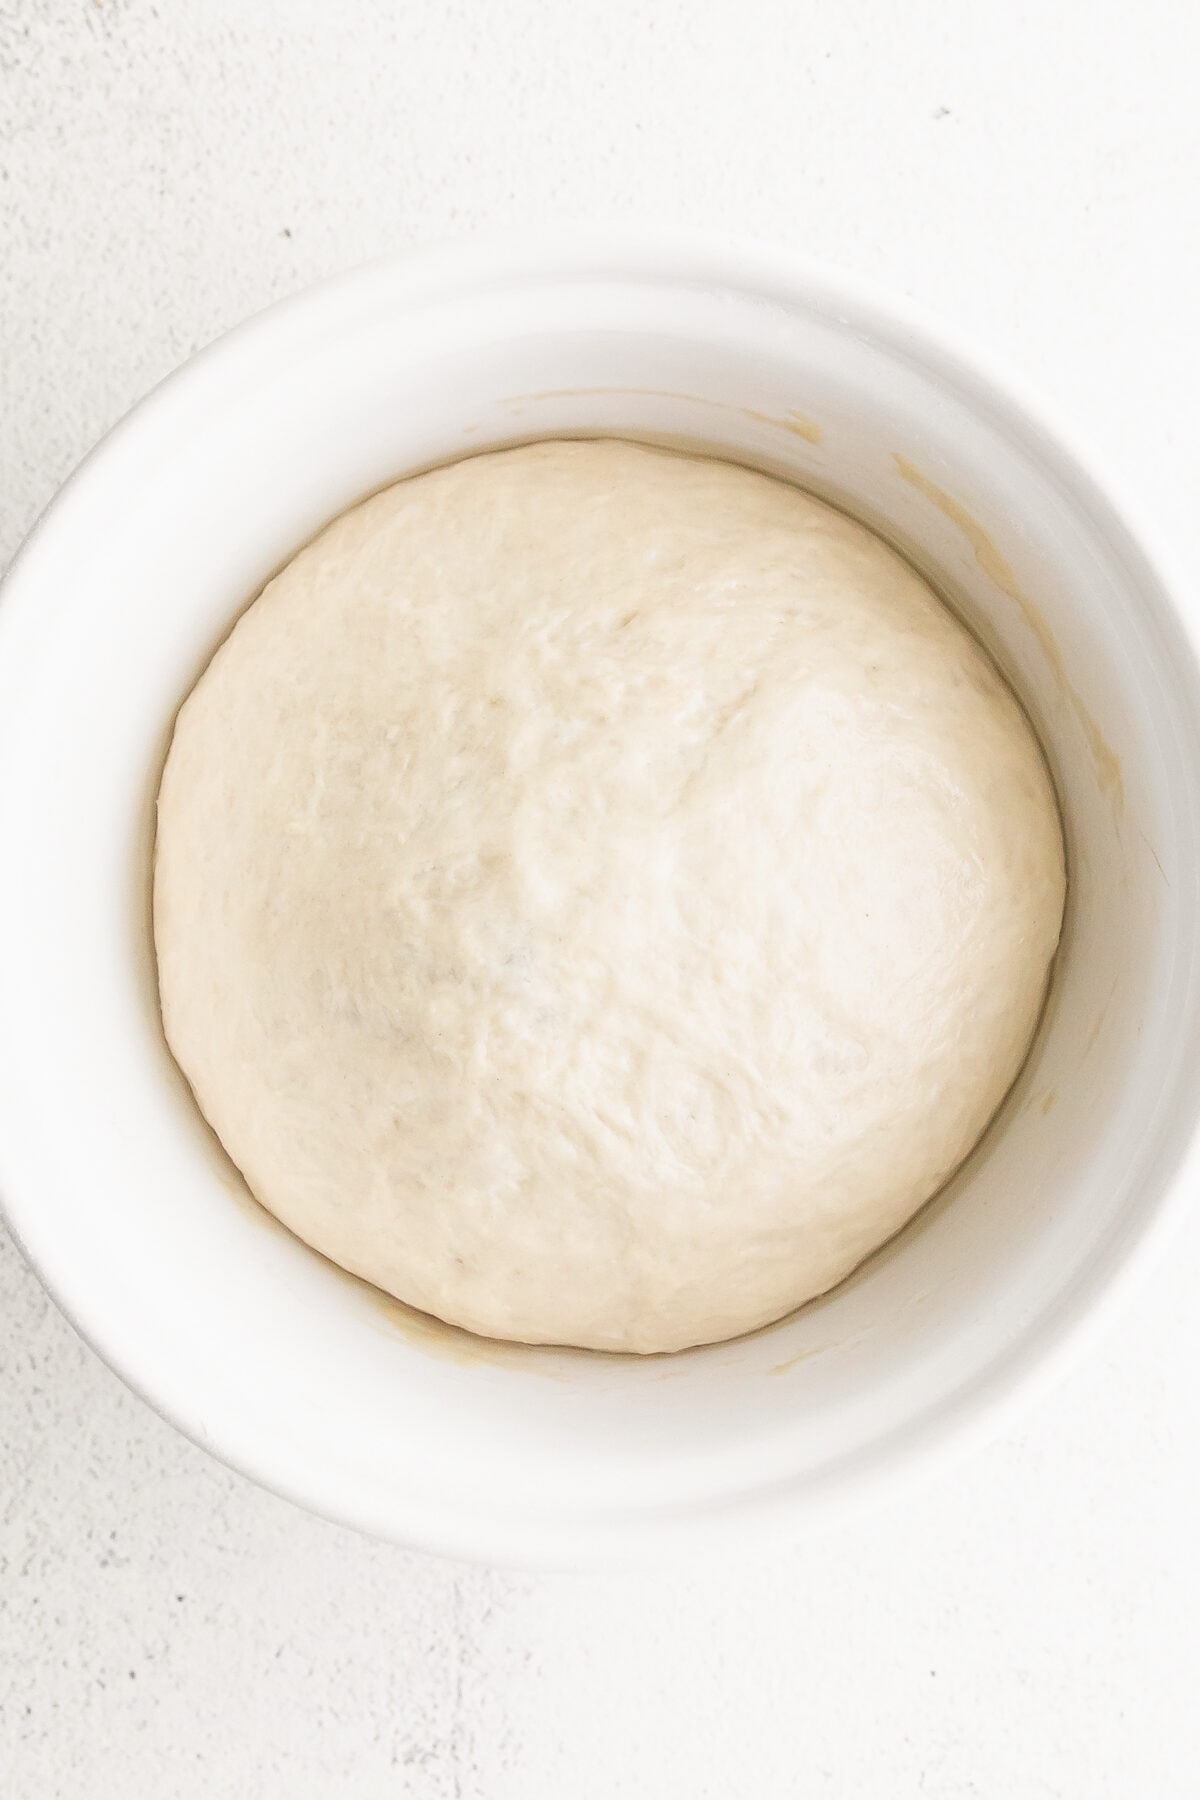 Risen bagel dough in a white bowl.